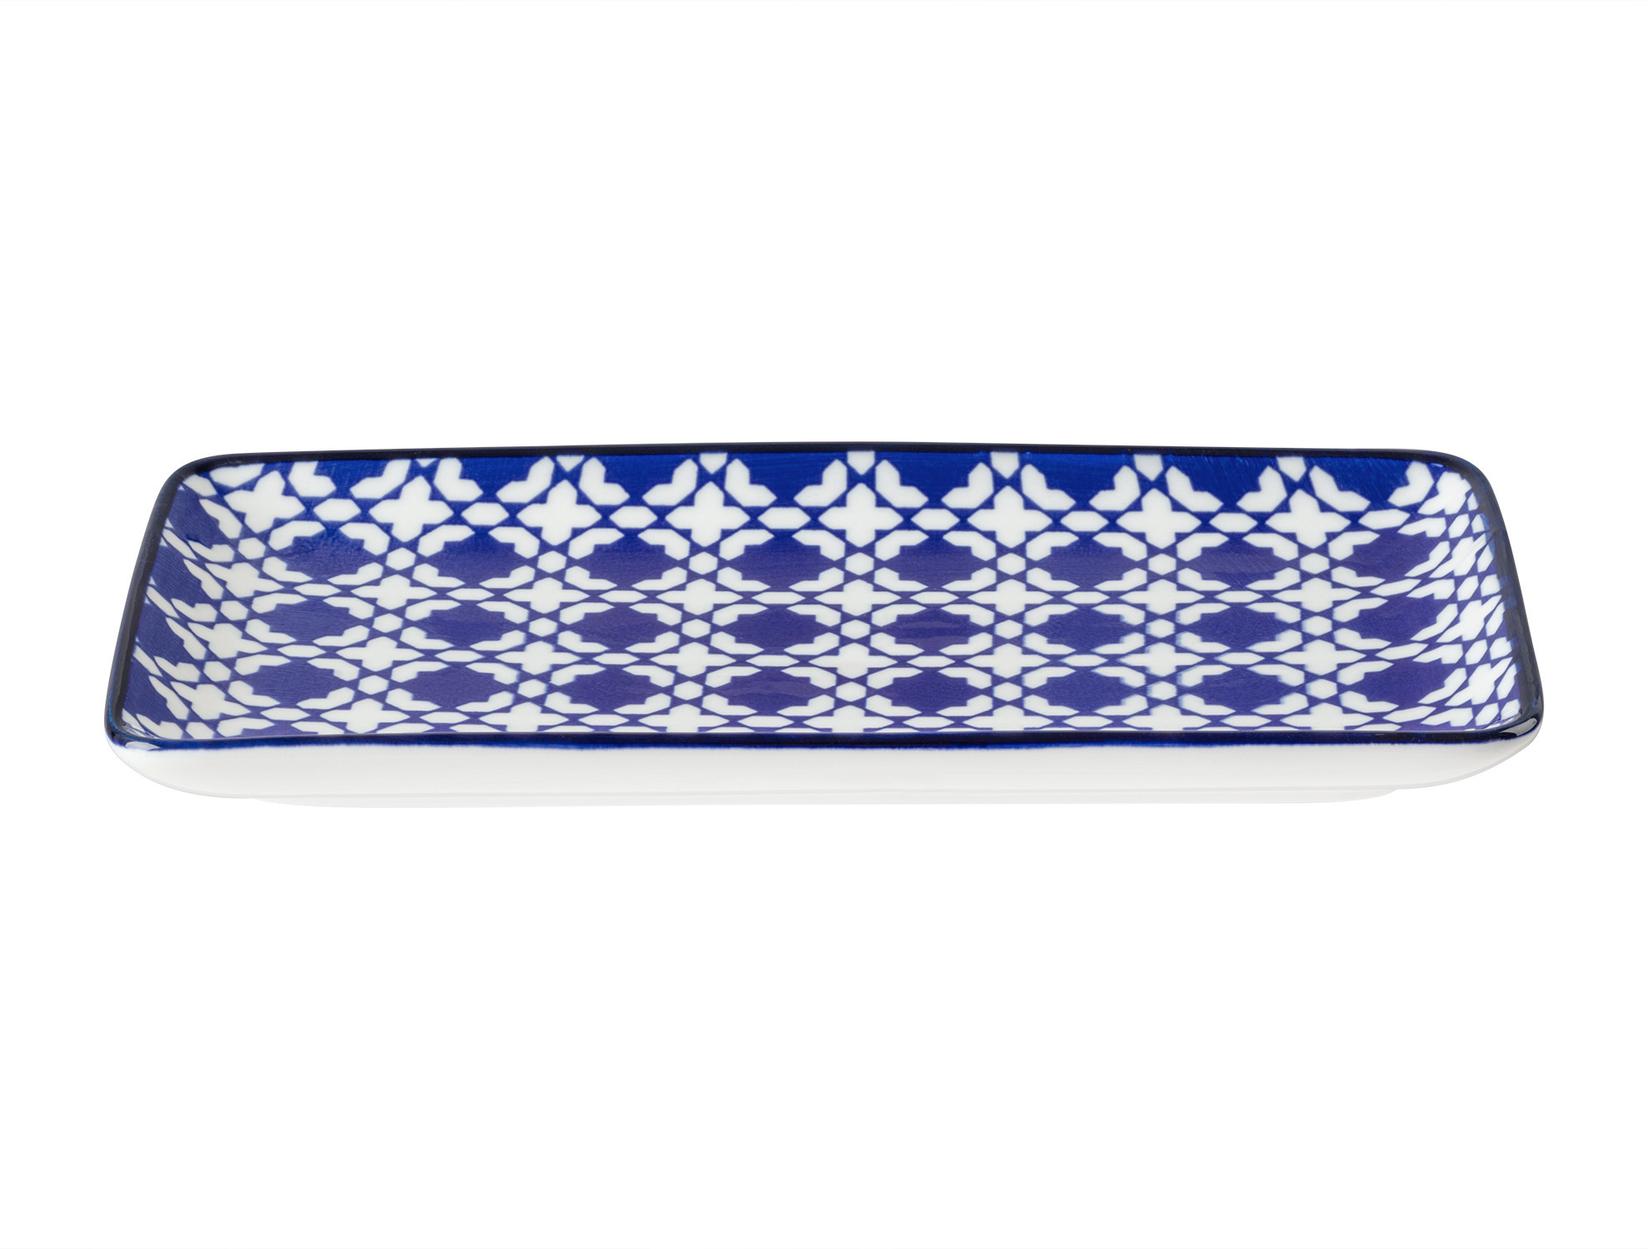 Selected image for MADAME COCO Rêve Bleu Tanjir za serviranje, 22.5x12.2x2.2cm, Plavo-beli